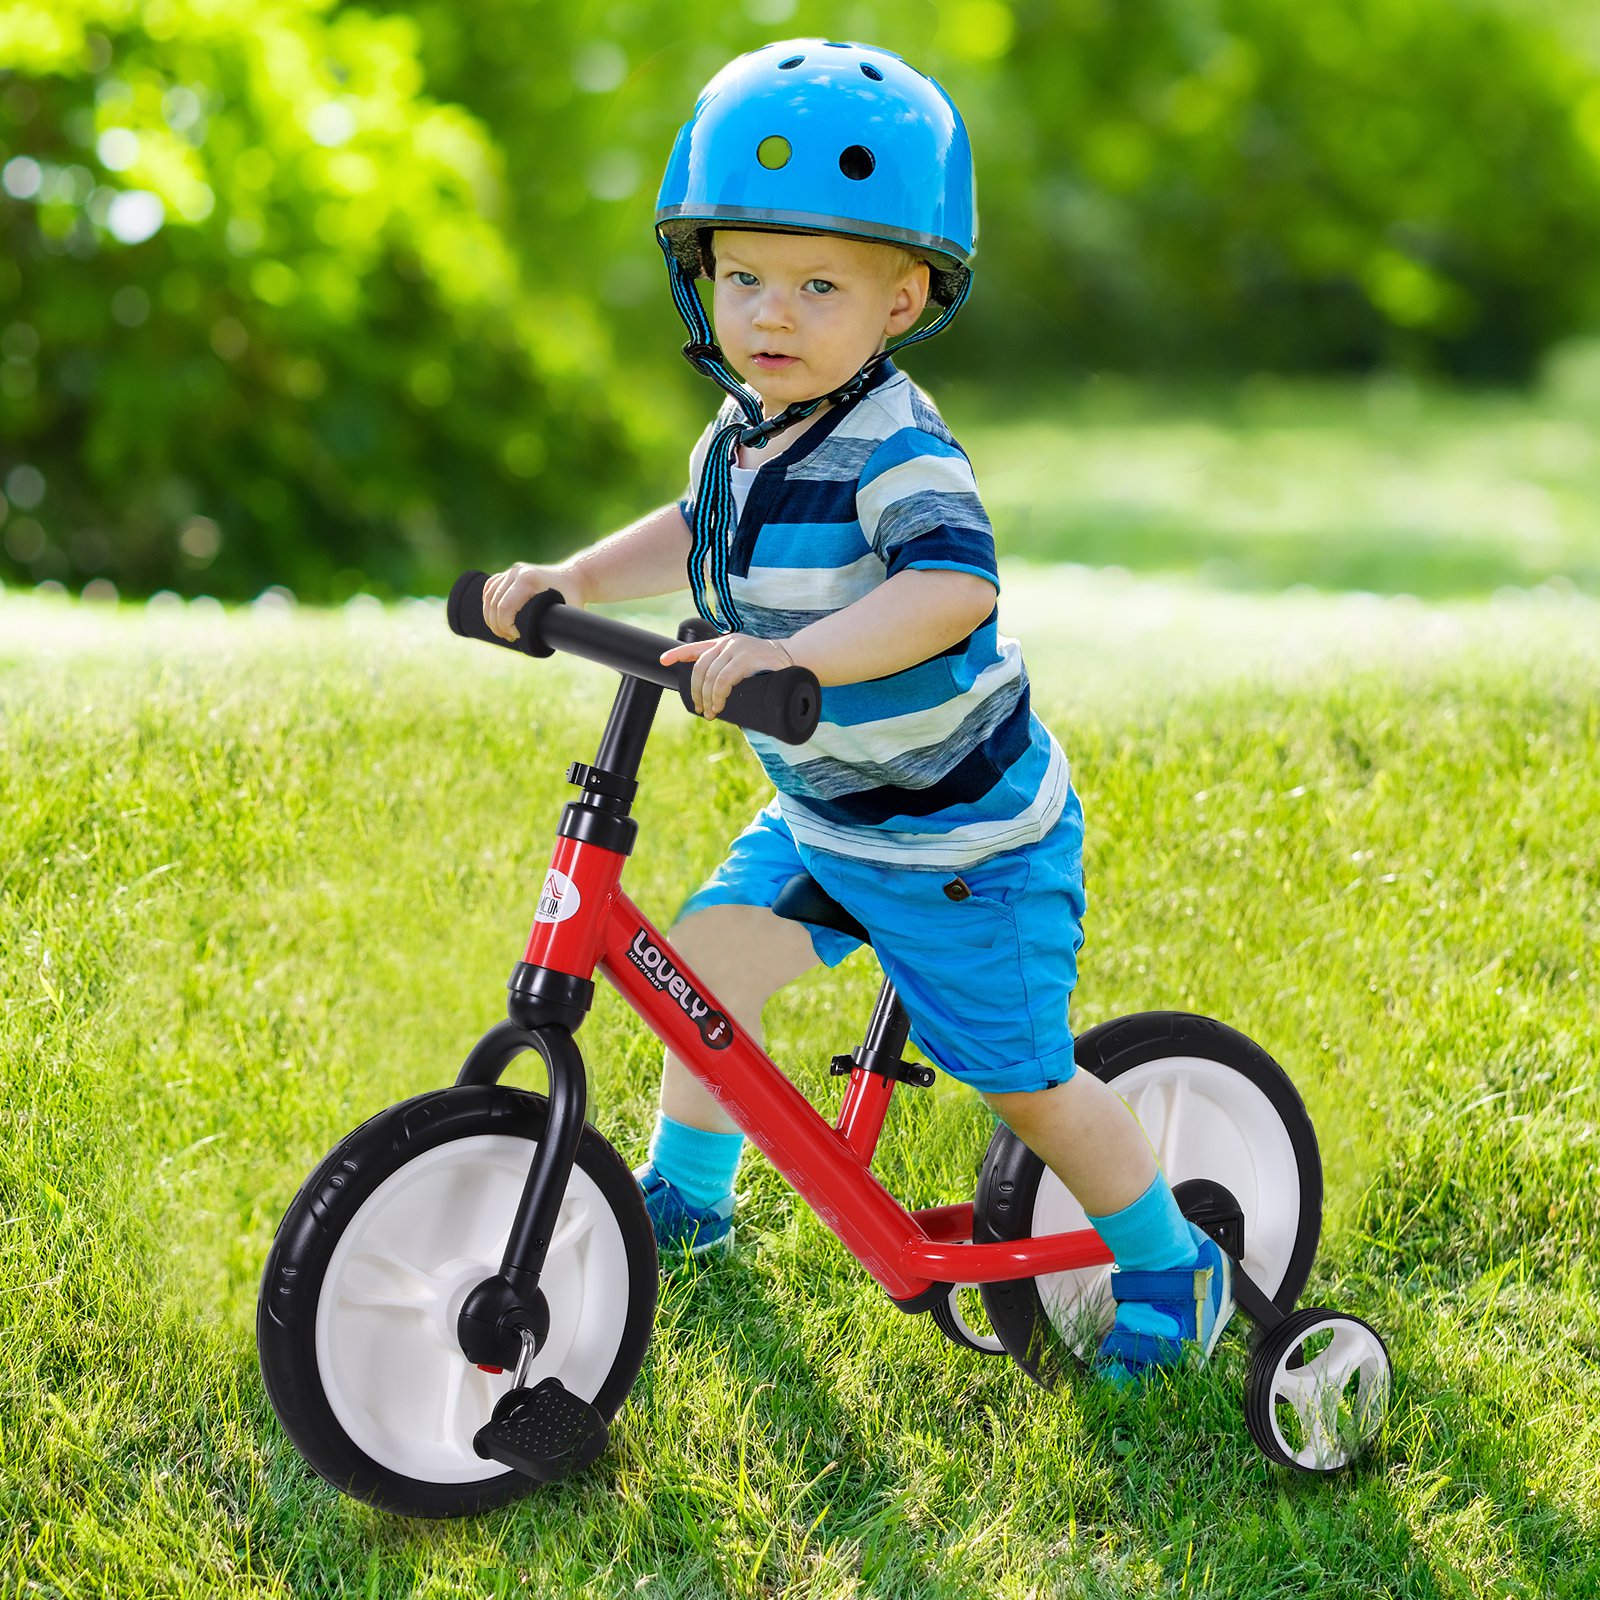 HOMCOM Moto infantil para crianças acima de 18 meses com 3 rodas Música e  farol 71x40x51